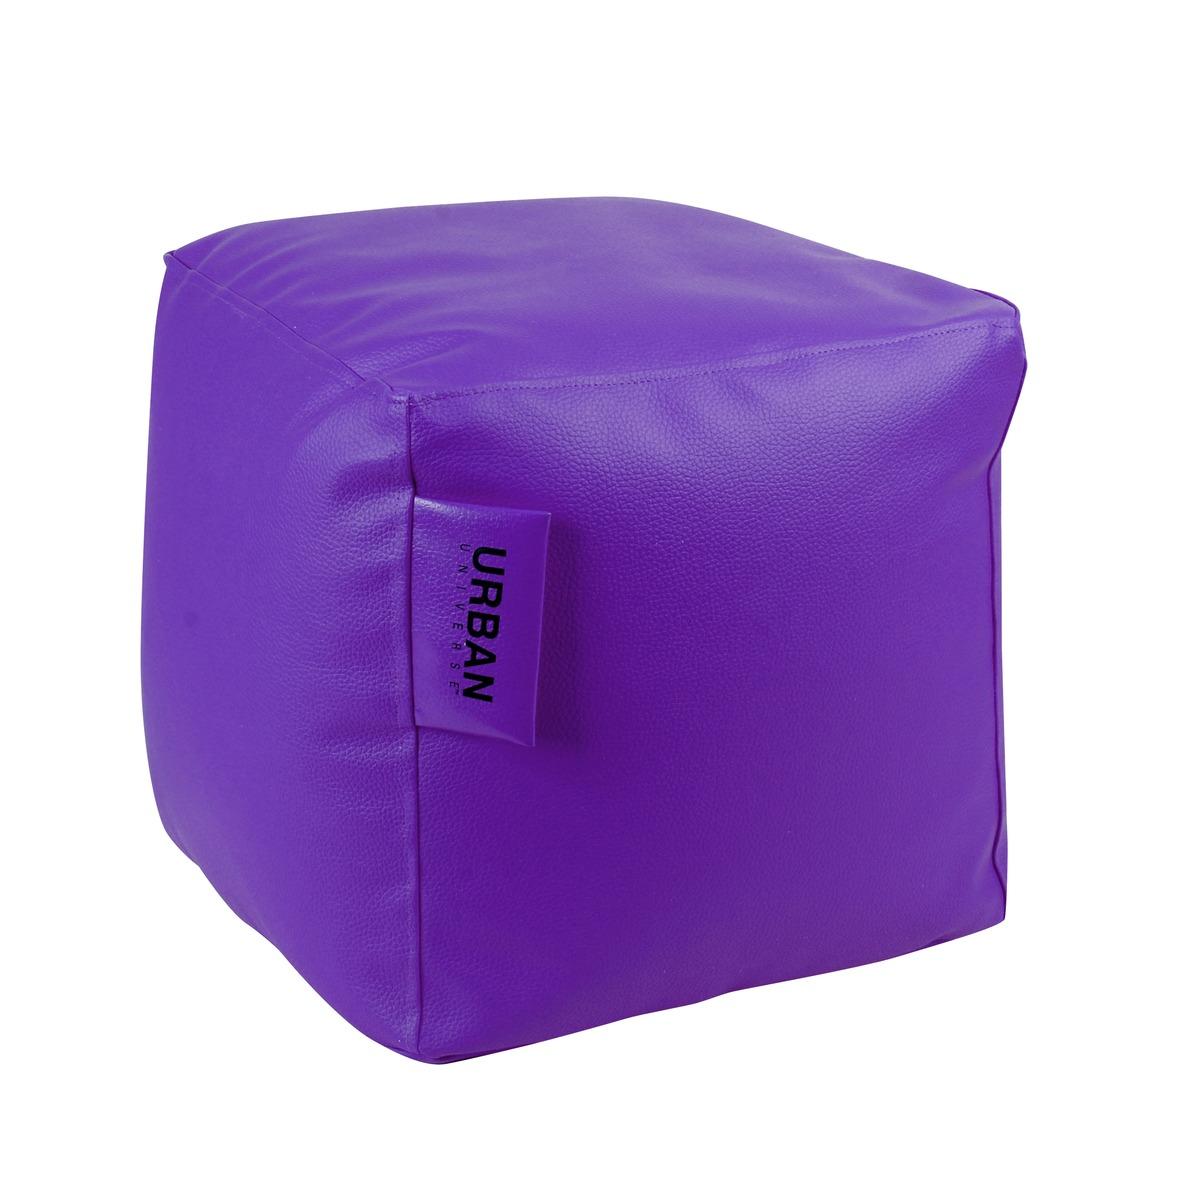 Pouf carré violet - imitation cuir - 40 x 40 x 40 cm - Violet